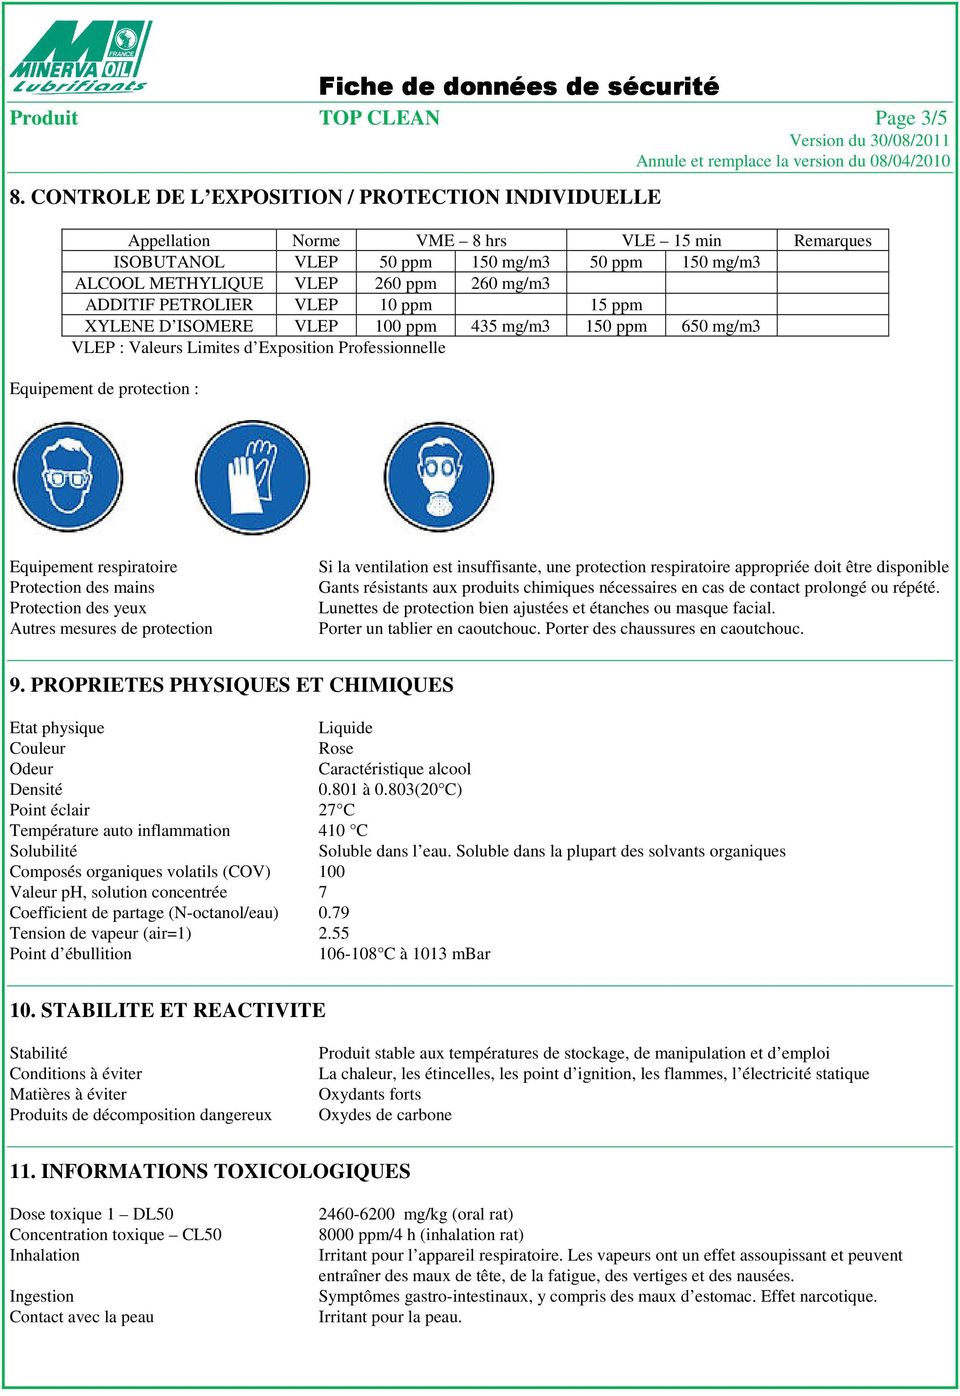 PETROLIER VLEP 10 ppm 15 ppm XYLENE D ISOMERE VLEP 100 ppm 435 mg/m3 150 ppm 650 mg/m3 VLEP : Valeurs Limites d Exposition Professionnelle Equipement de protection : Equipement respiratoire